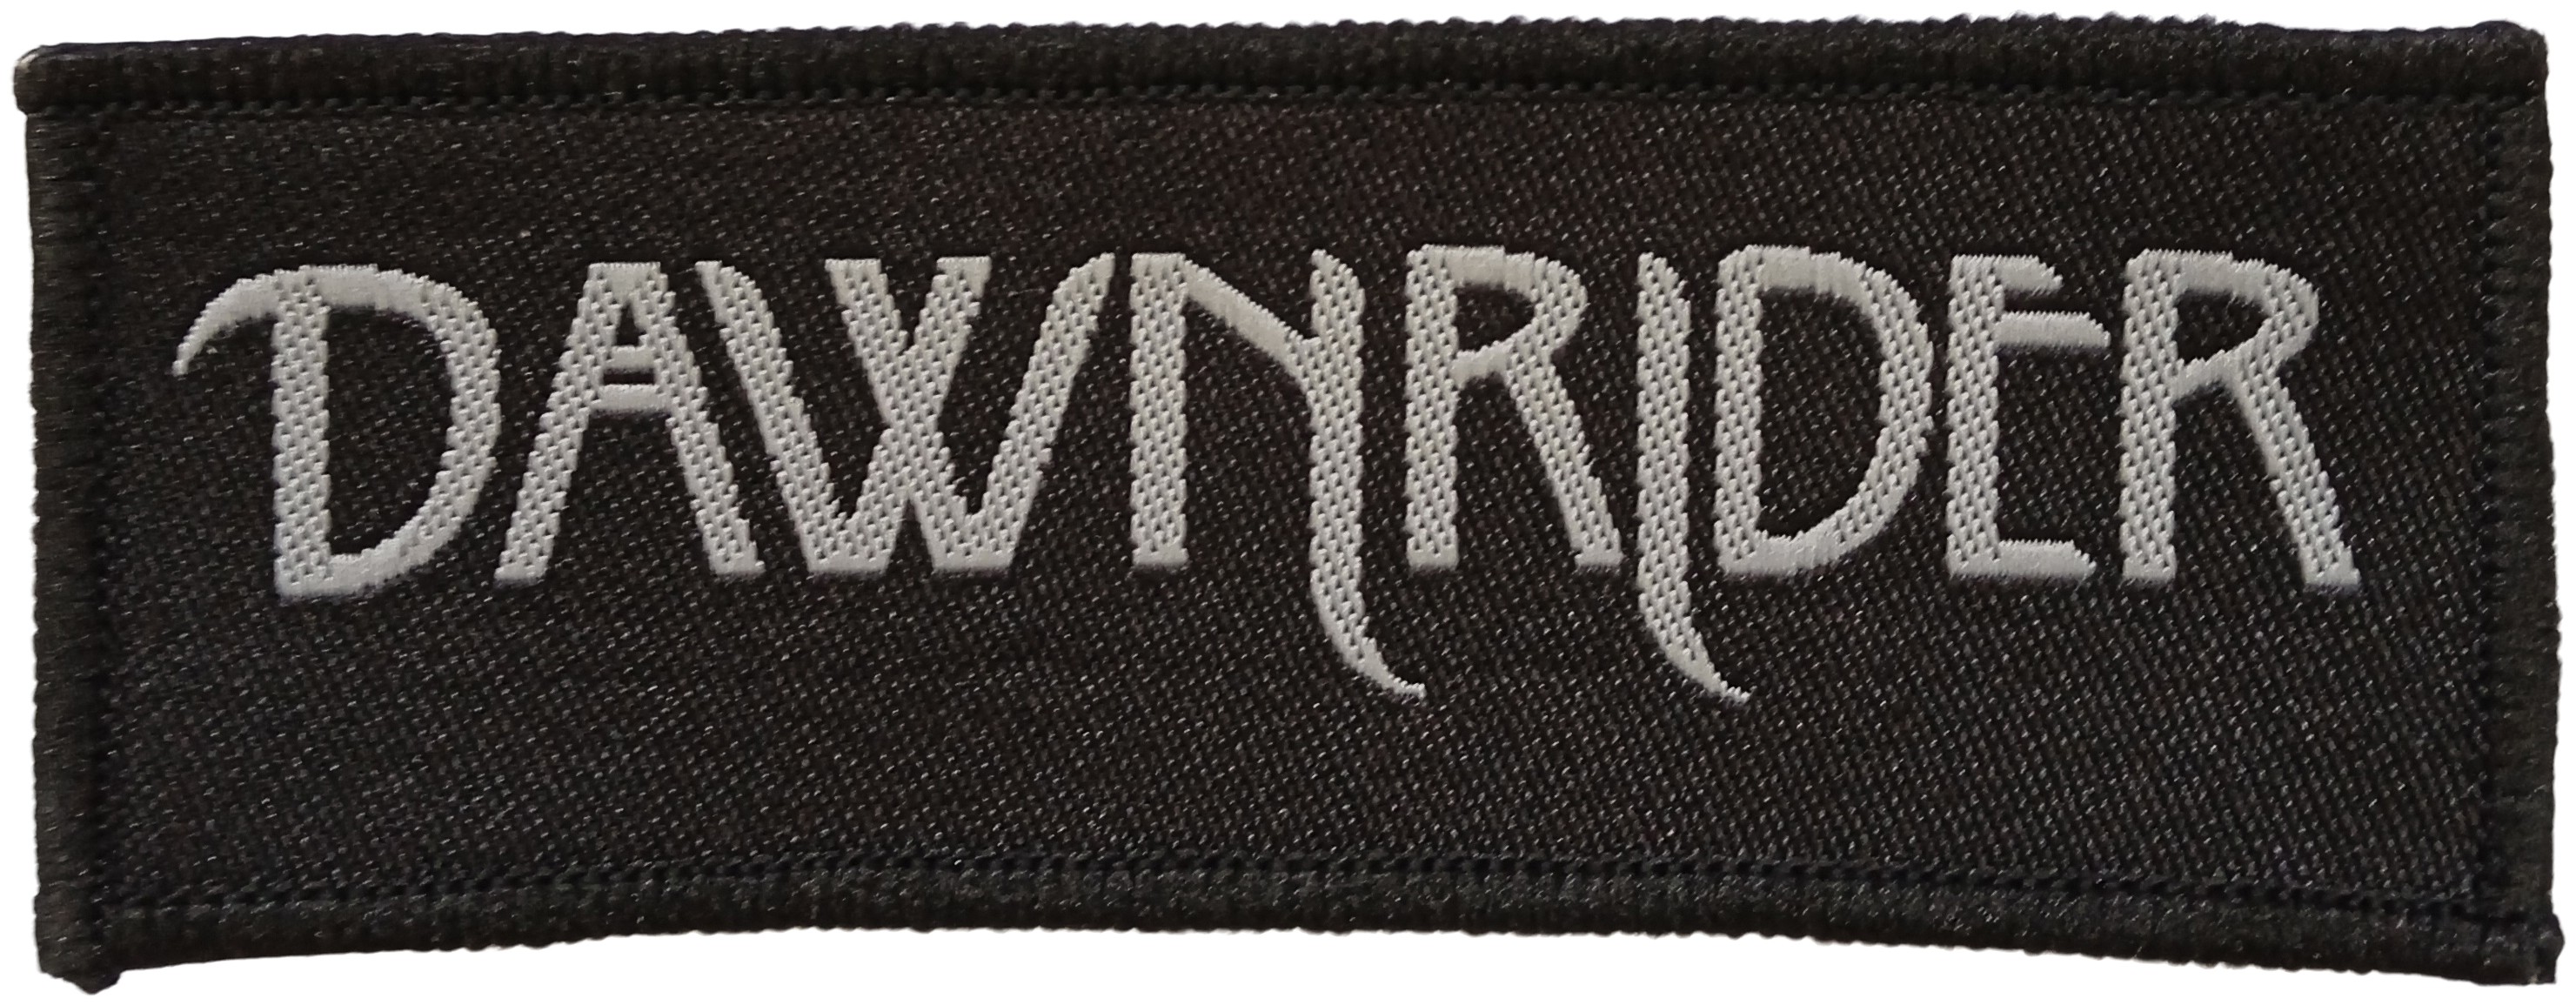 Dawnrider - Logo